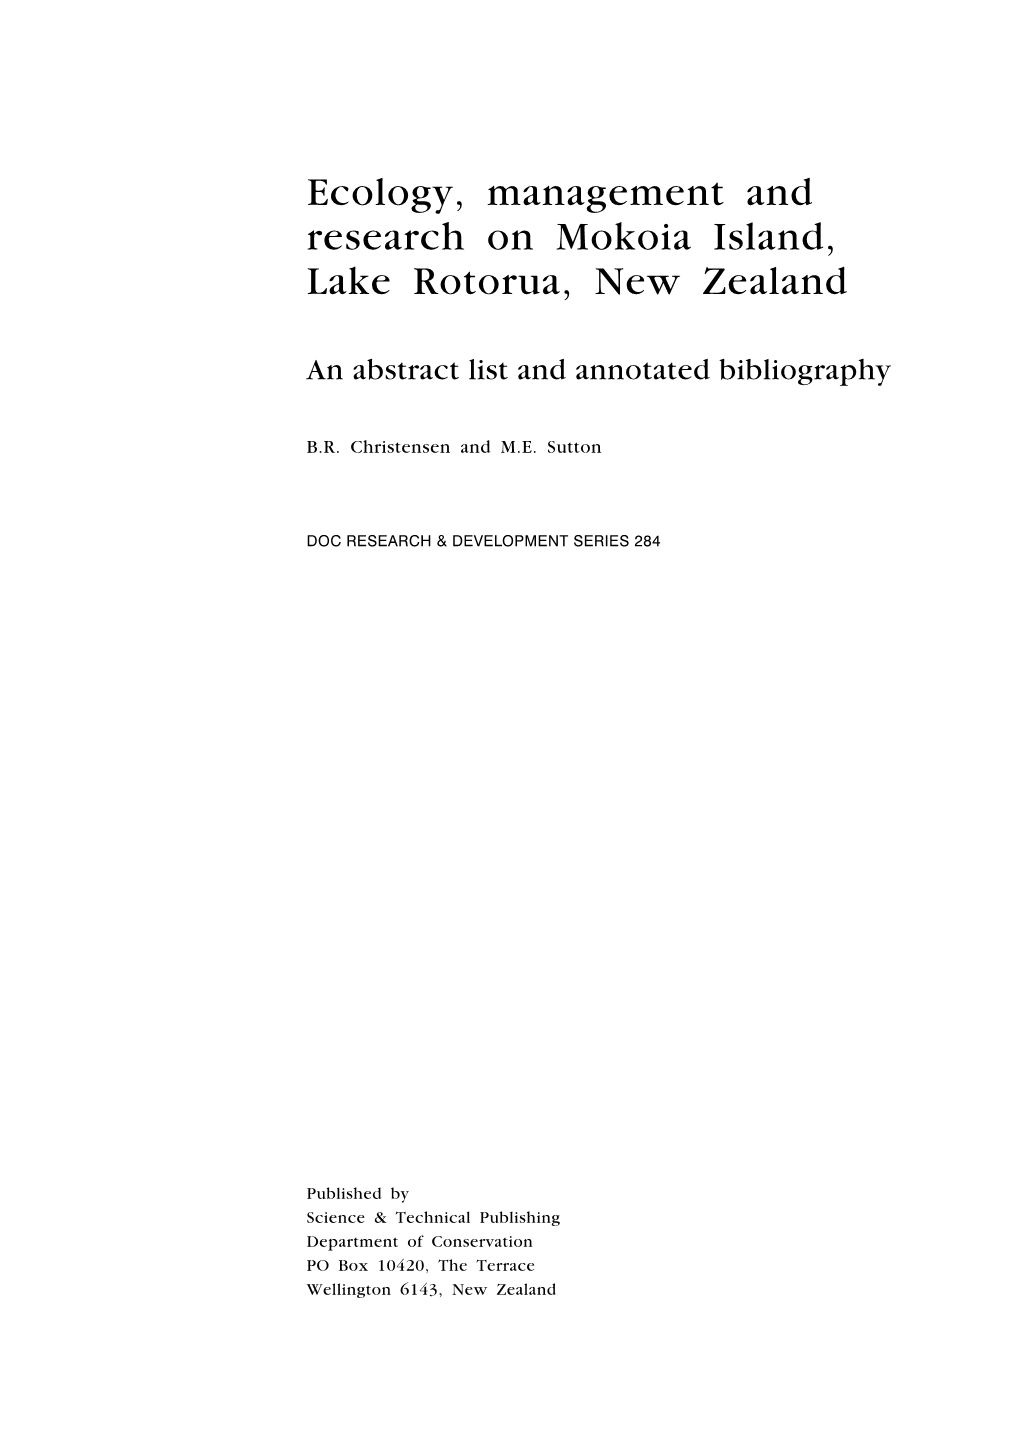 Ecology, Management and Research on Mokoia Island, Lake Rotorua, New Zealand